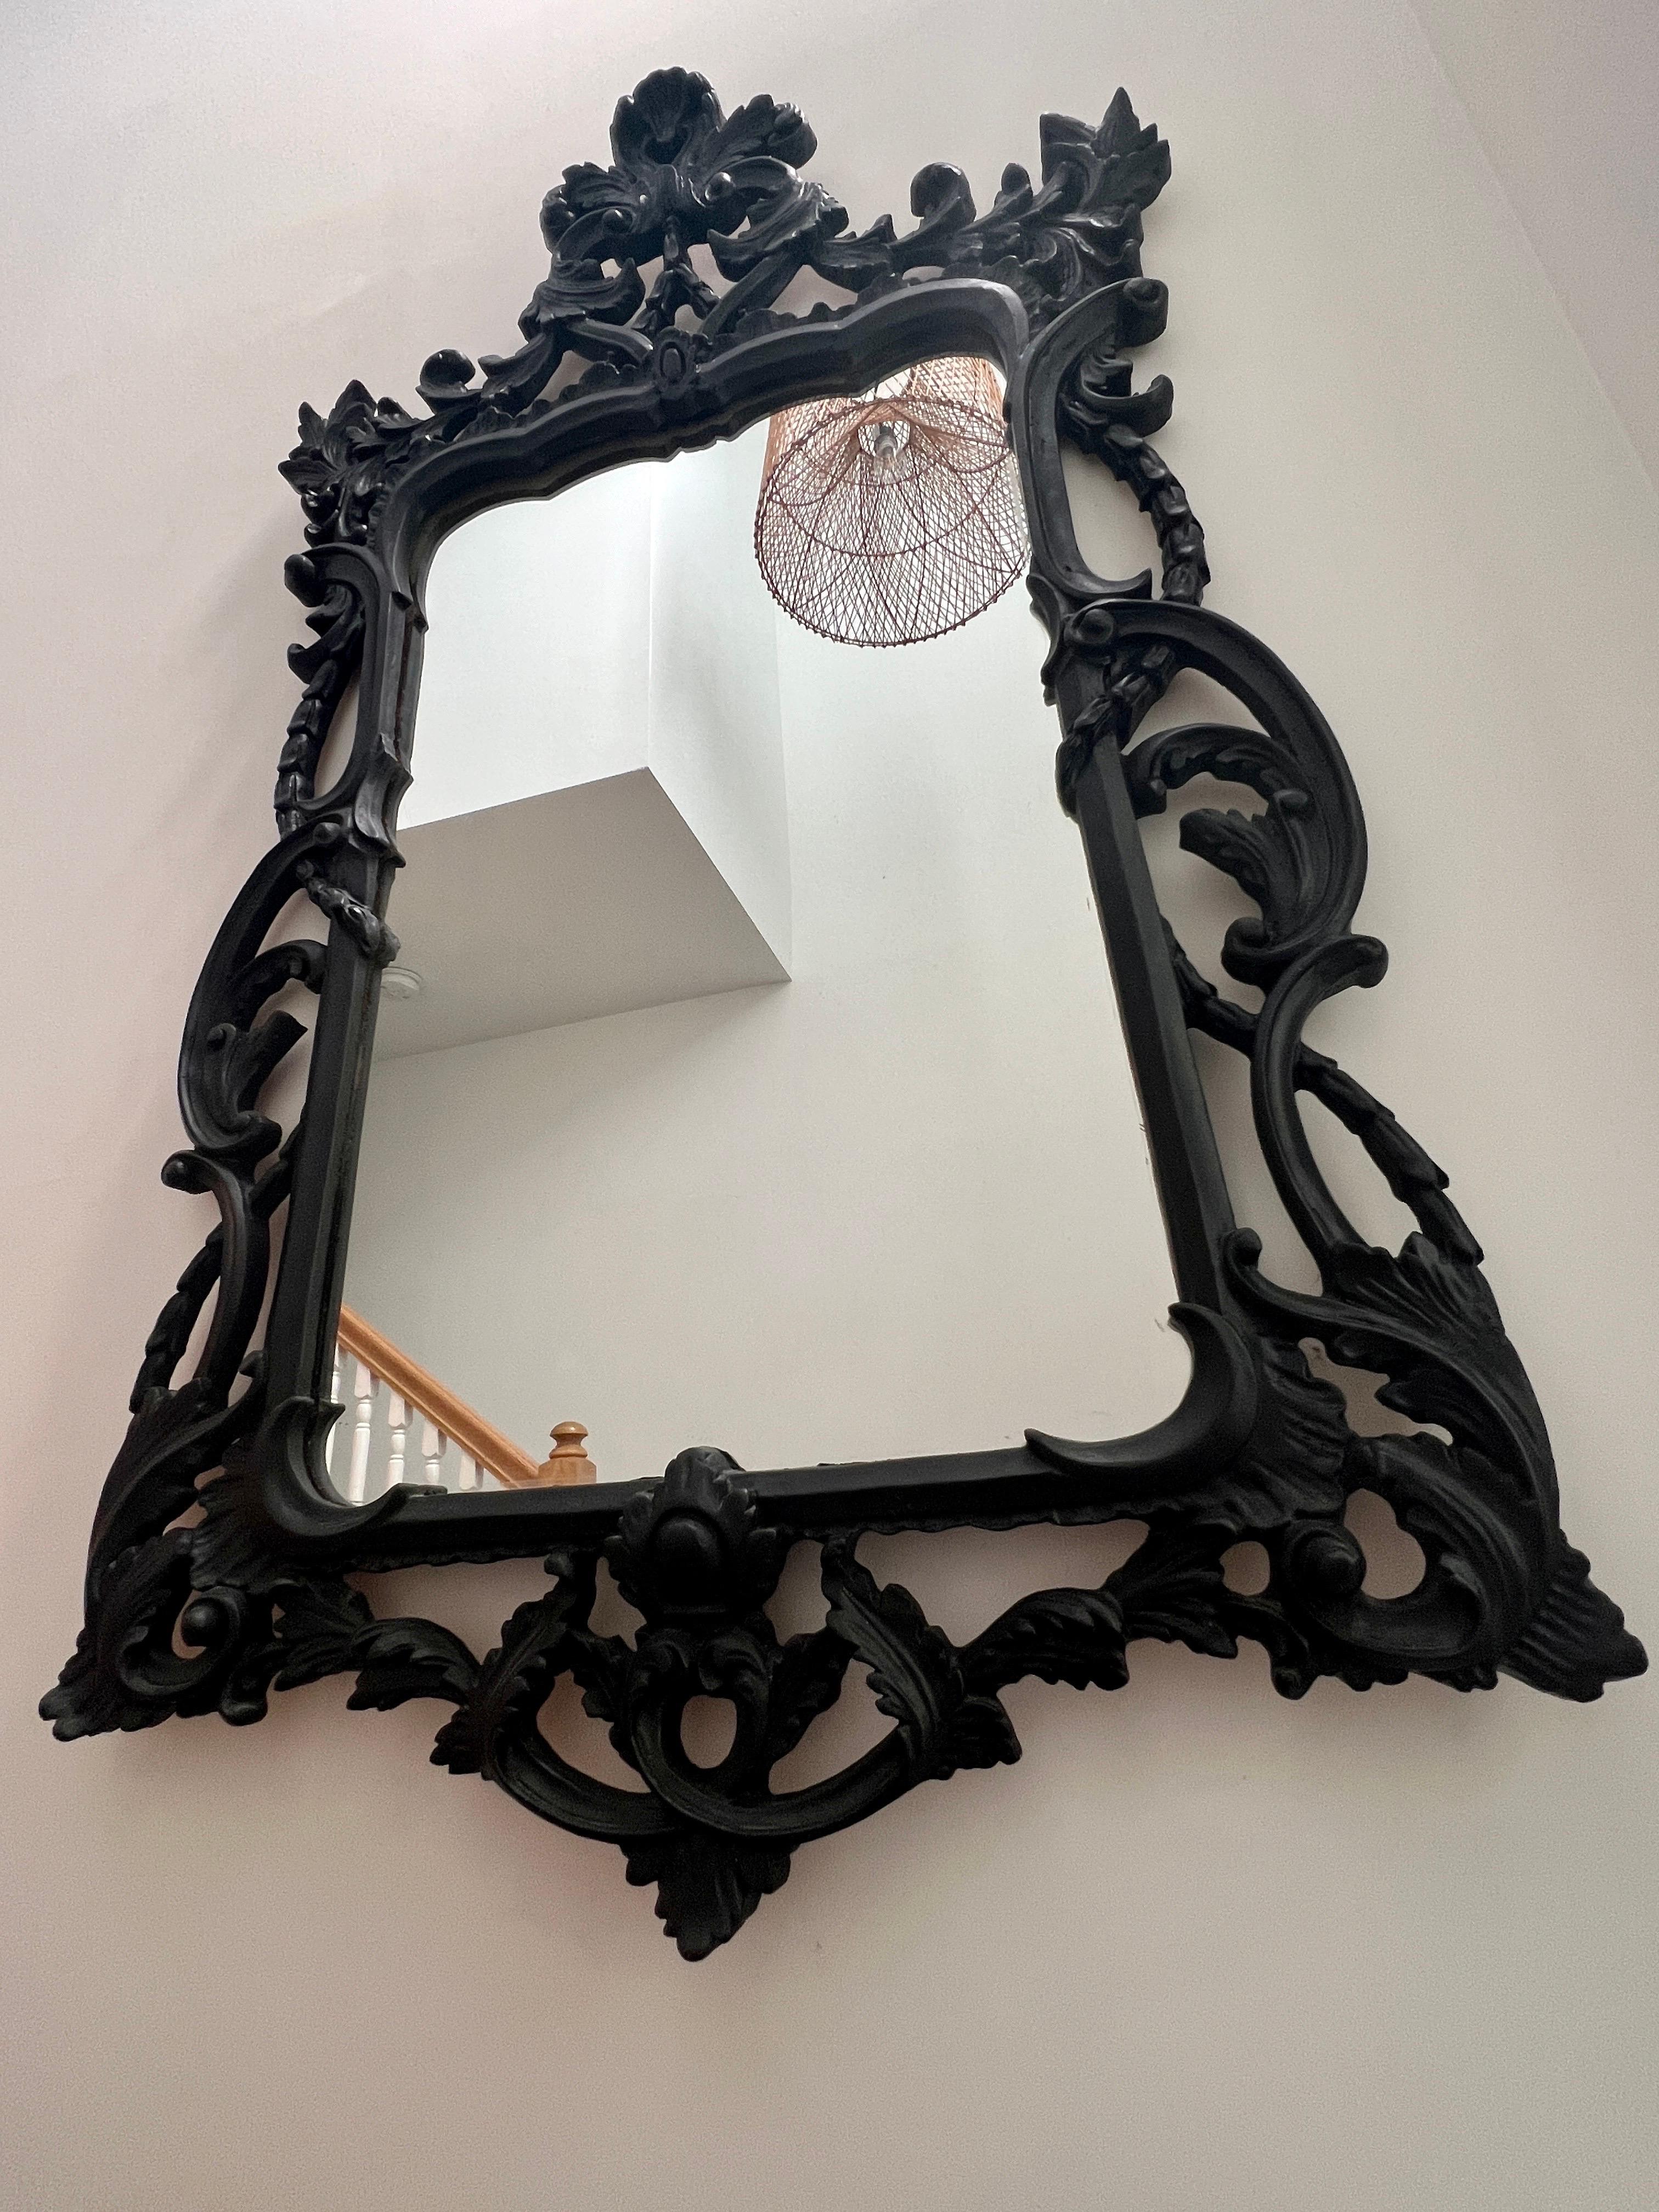 Grand miroir Hollywood Regency avec cadre en bois sculpté de style rococo traditionnel. Le miroir présente un bouclier composé d'une série de volutes sculptées à la main avec des détails de feuillage. La finition noire vintage a une qualité